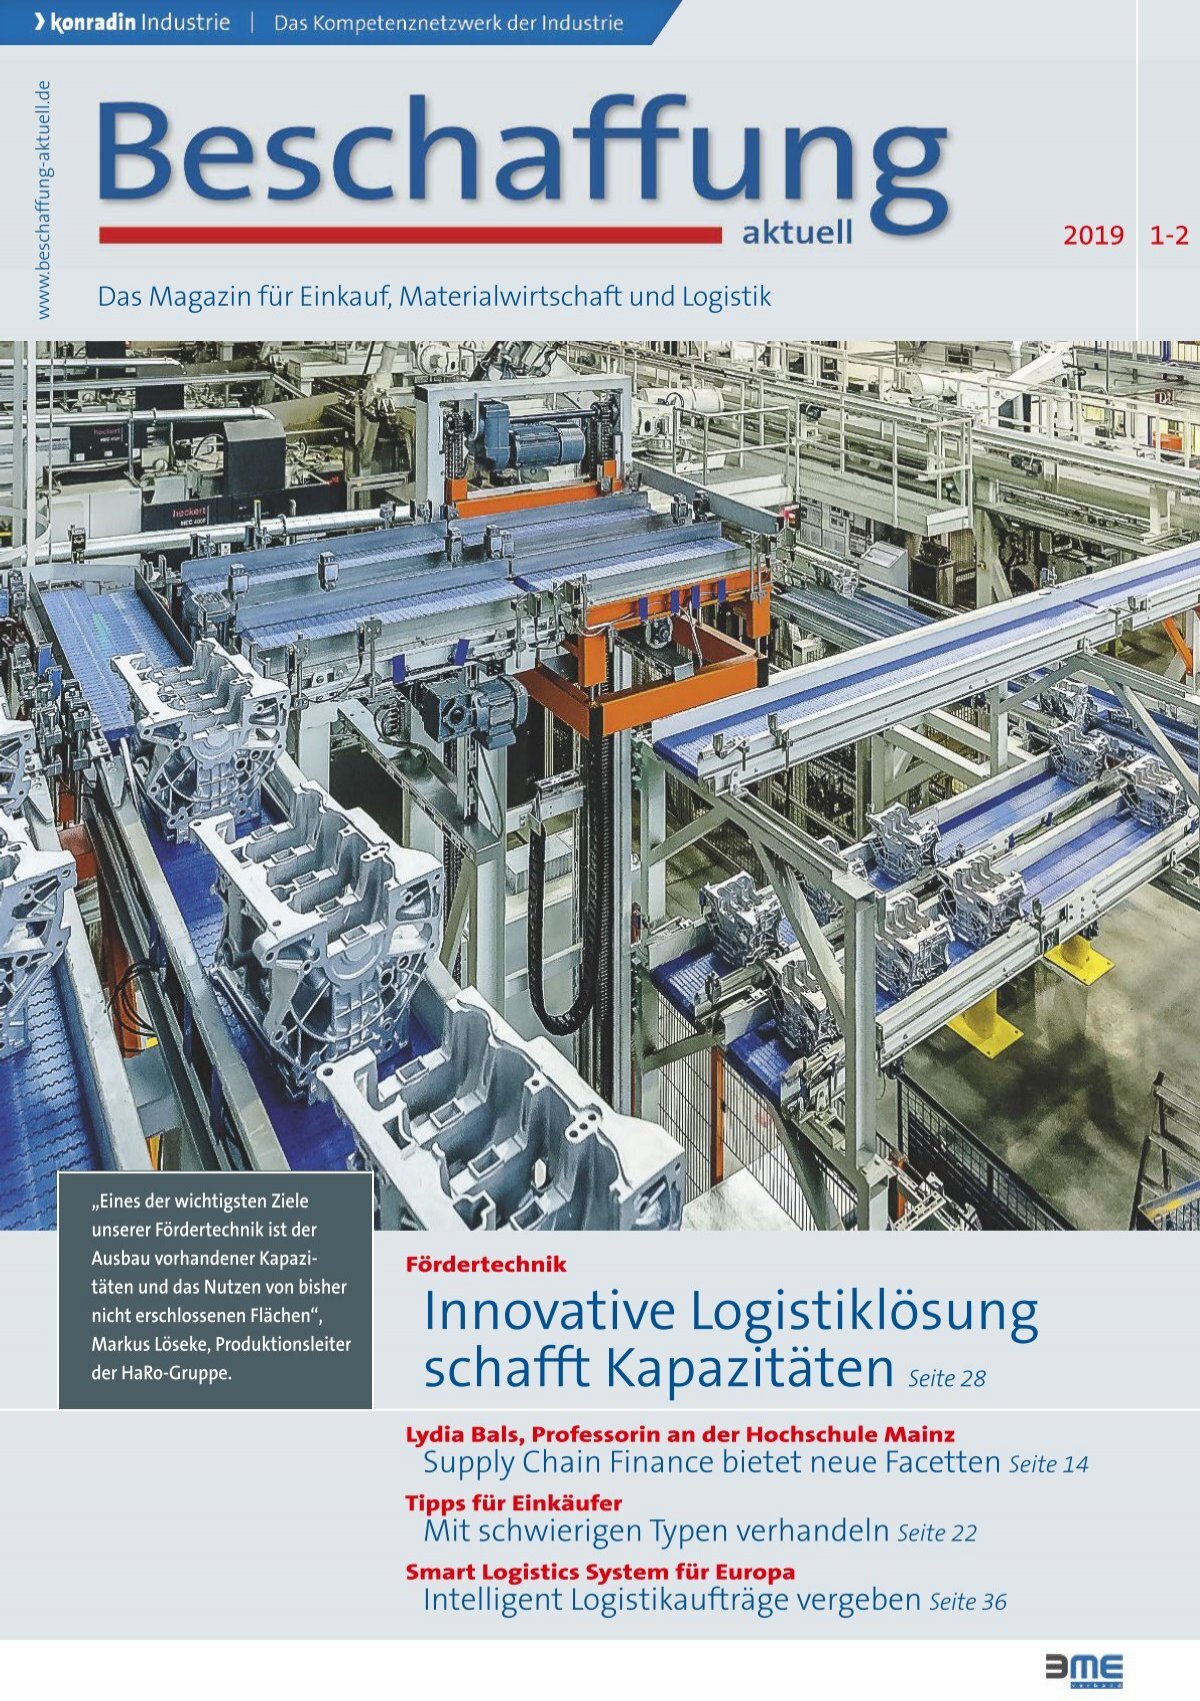 Dresselhaus nimmt Logistik-Hub in Betrieb